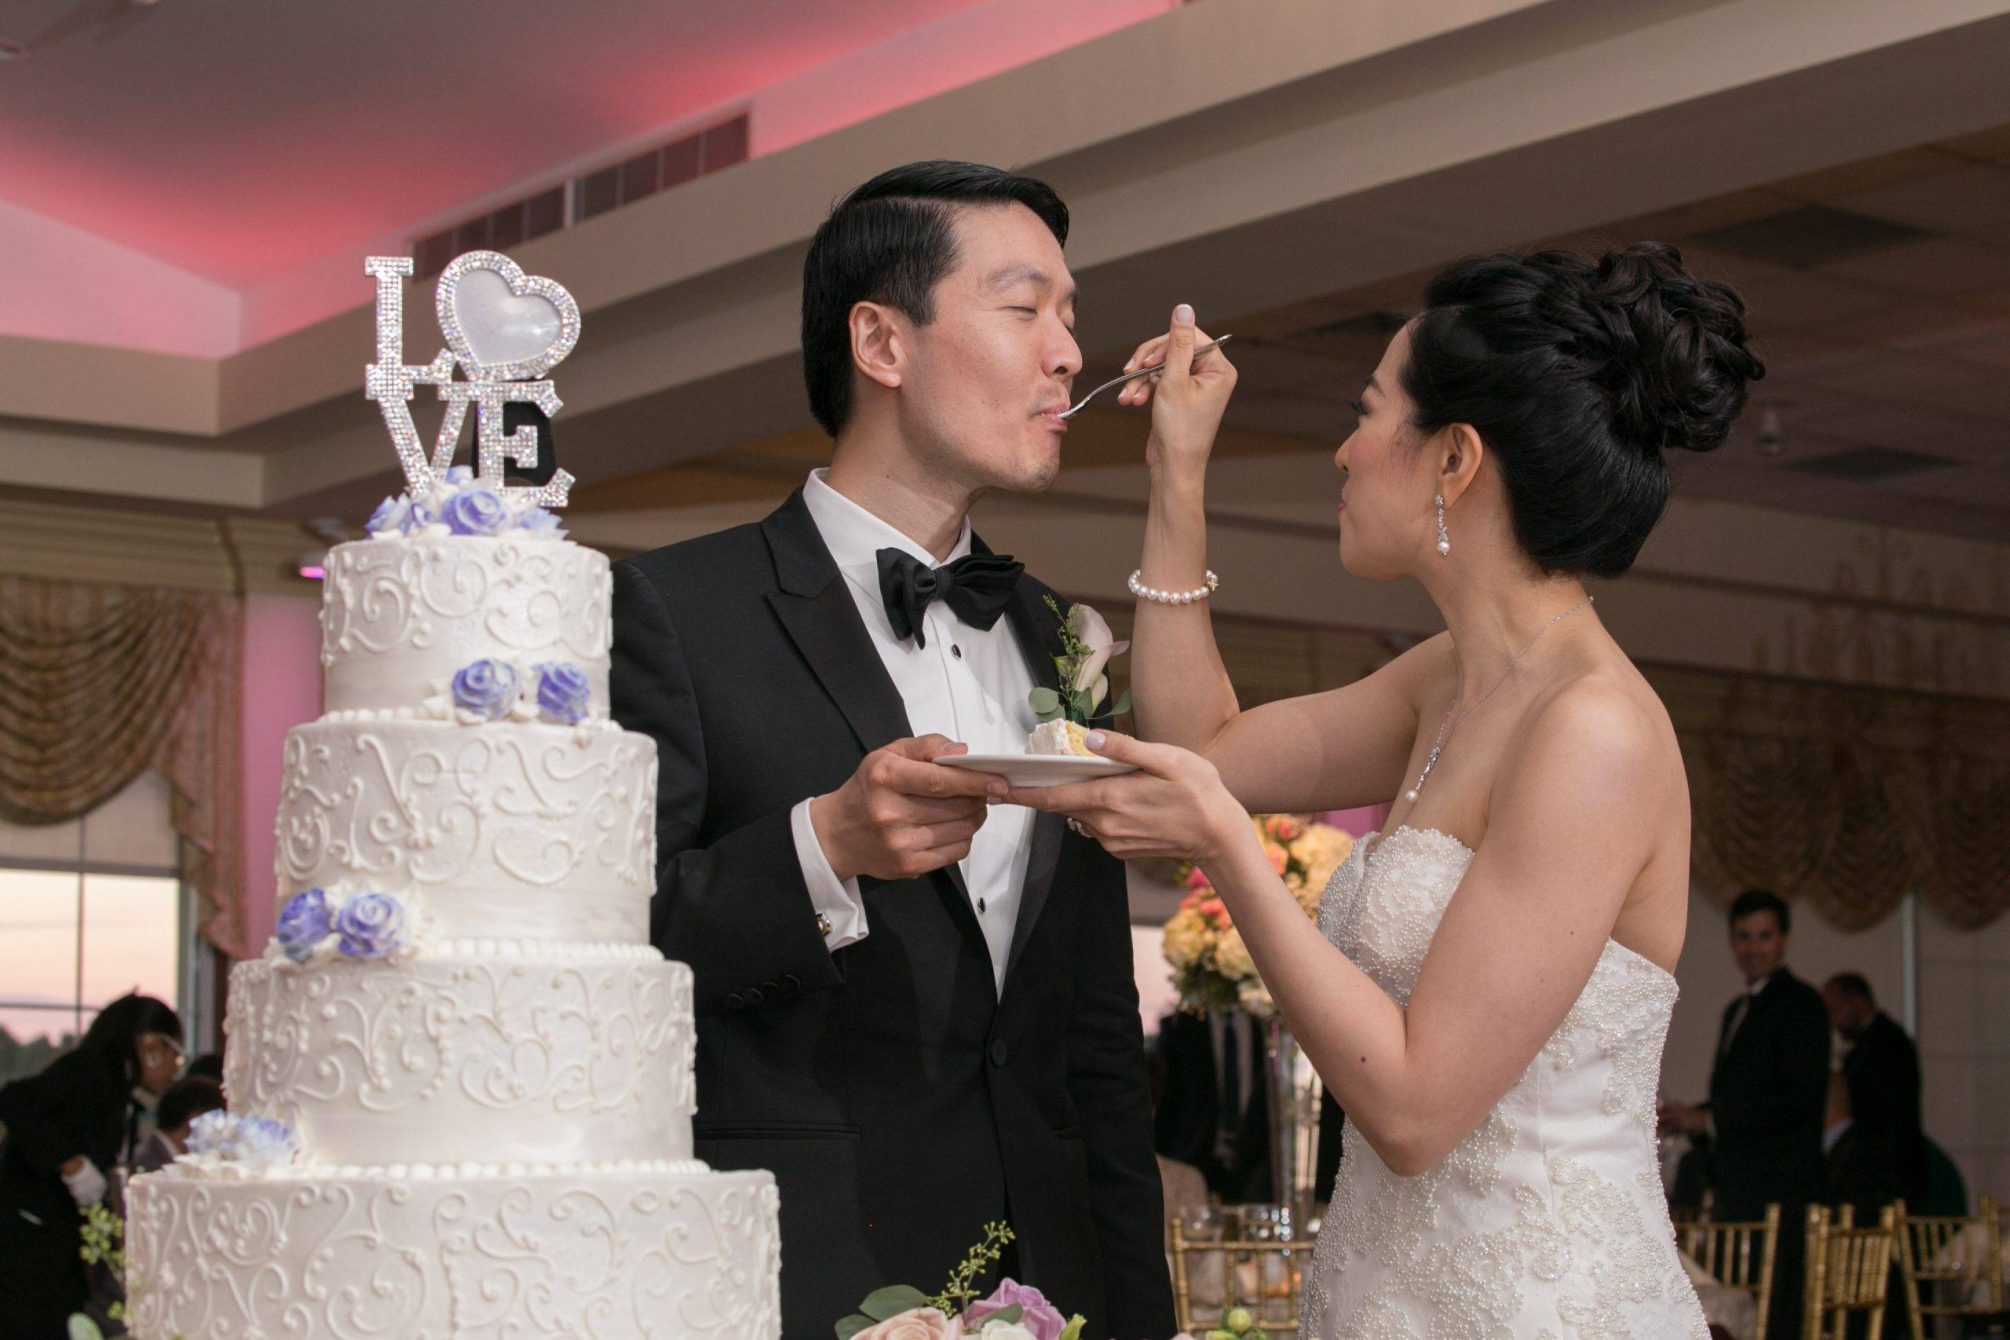 Brooklake wedding cake